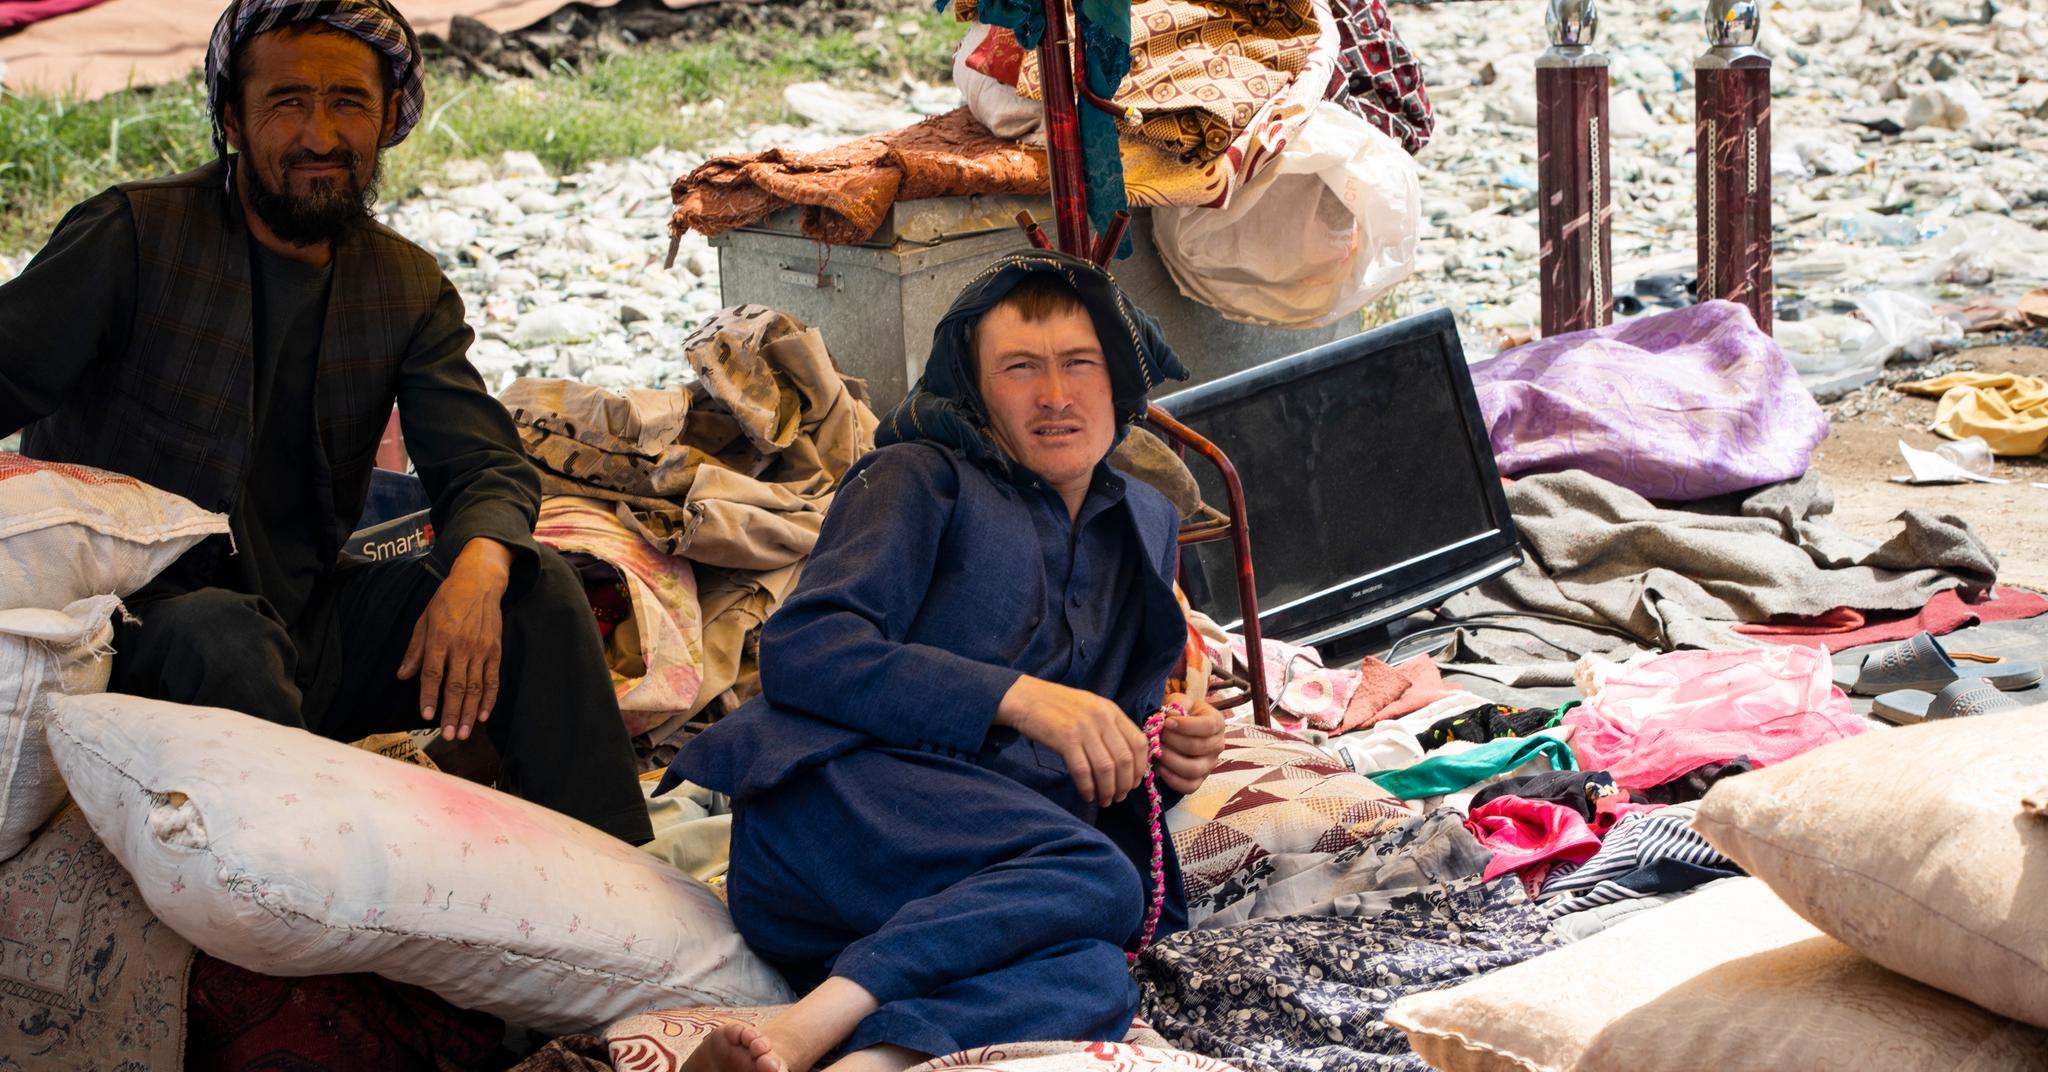 Nøden øker i Afghanistan. Bildet er fra et bruktmarked i Kabul, der folk selger hva de kan for å overleve.